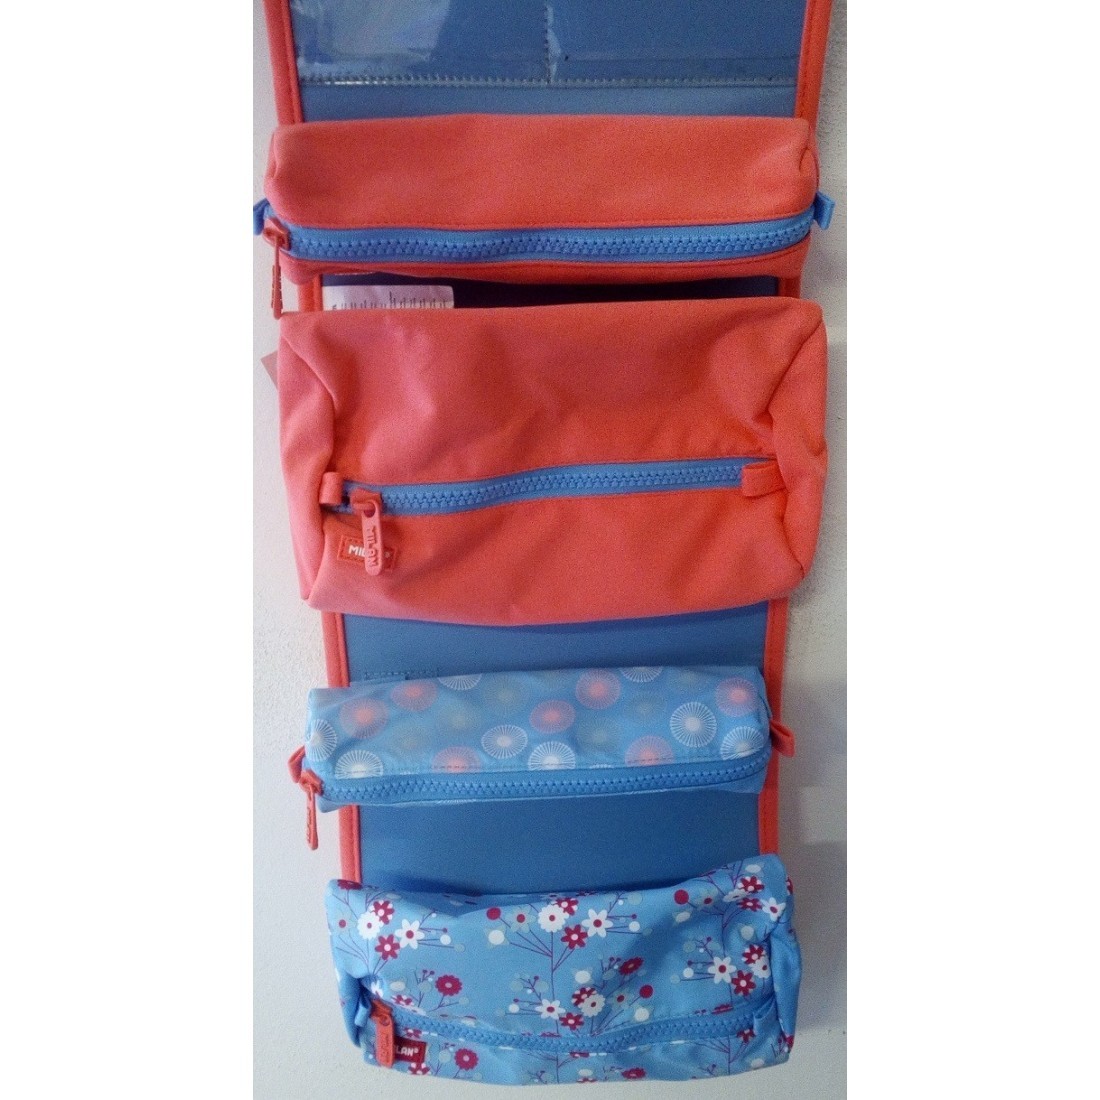 Piórnik BLOSSOM MILAN teczka z wyposażeniem 4 w 1 - różowo niebieska w kwiaty - plecak-tornister.pl